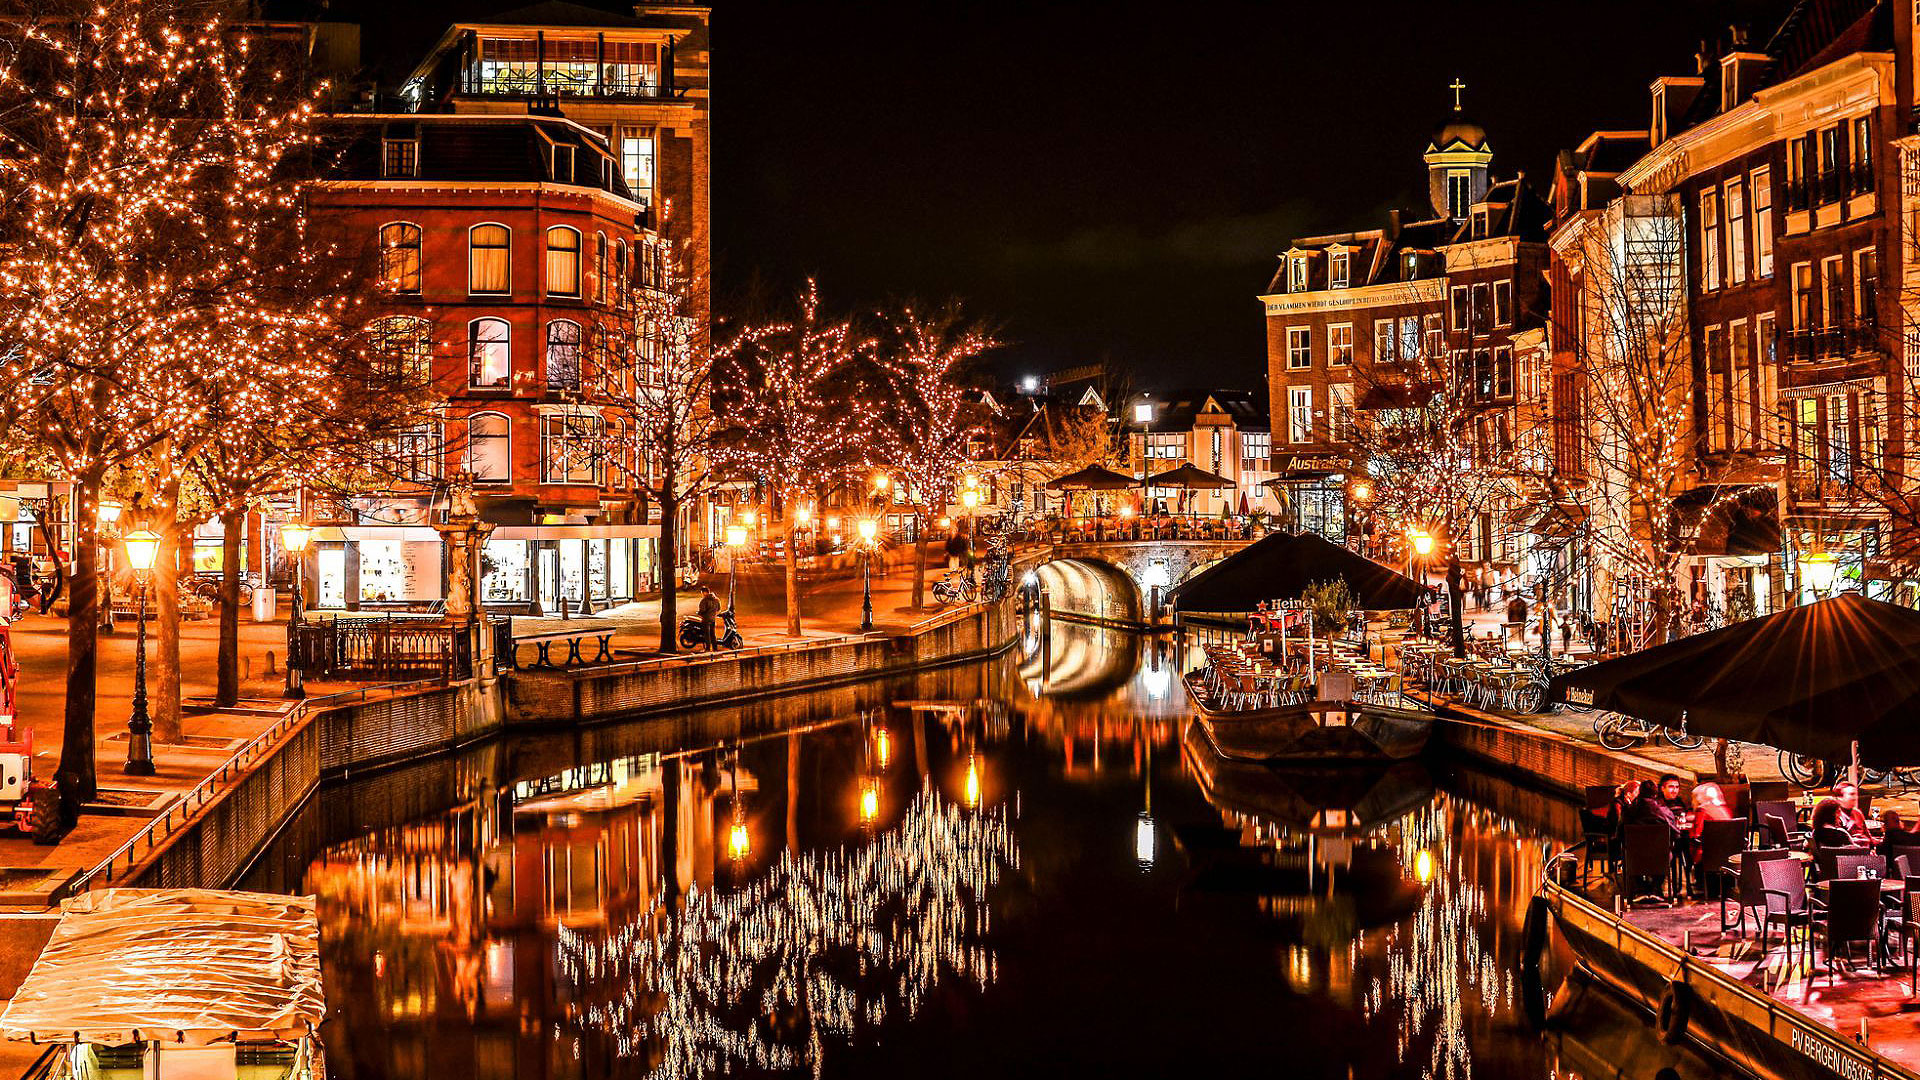 Les canaux illuminés pour Noël, en Hollande. En Hollande, les décorations de Noël sont flamboyantes. Ici le canal central à Leiden. © Meiry Peruch Mezari, CC by-nc 2.0